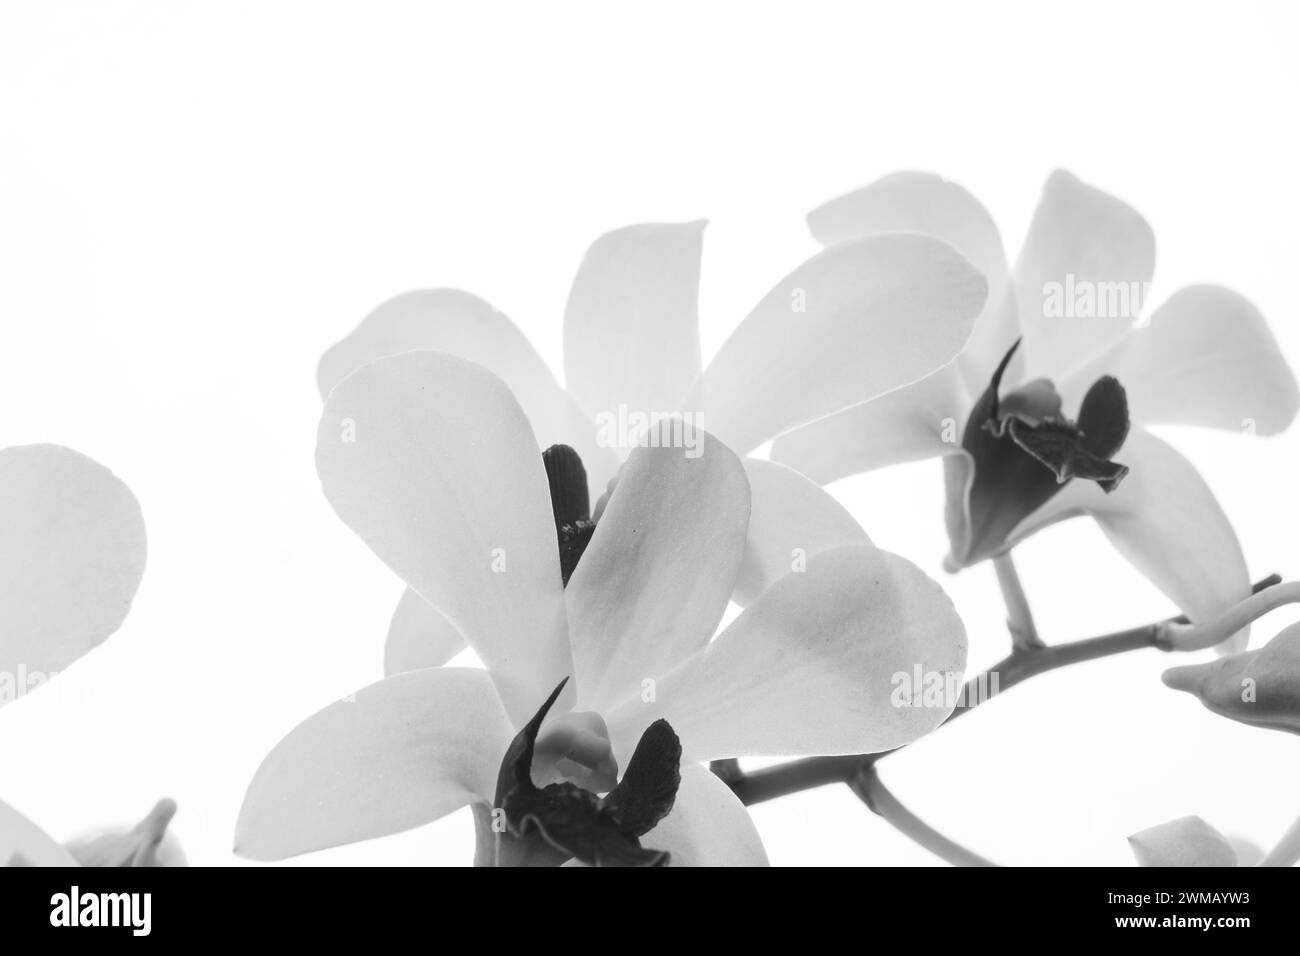 fleurs d'orchidée noires et blanches avec des parties rognées, adaptées à l'utilisation de cadres et d'espaces de texte Banque D'Images